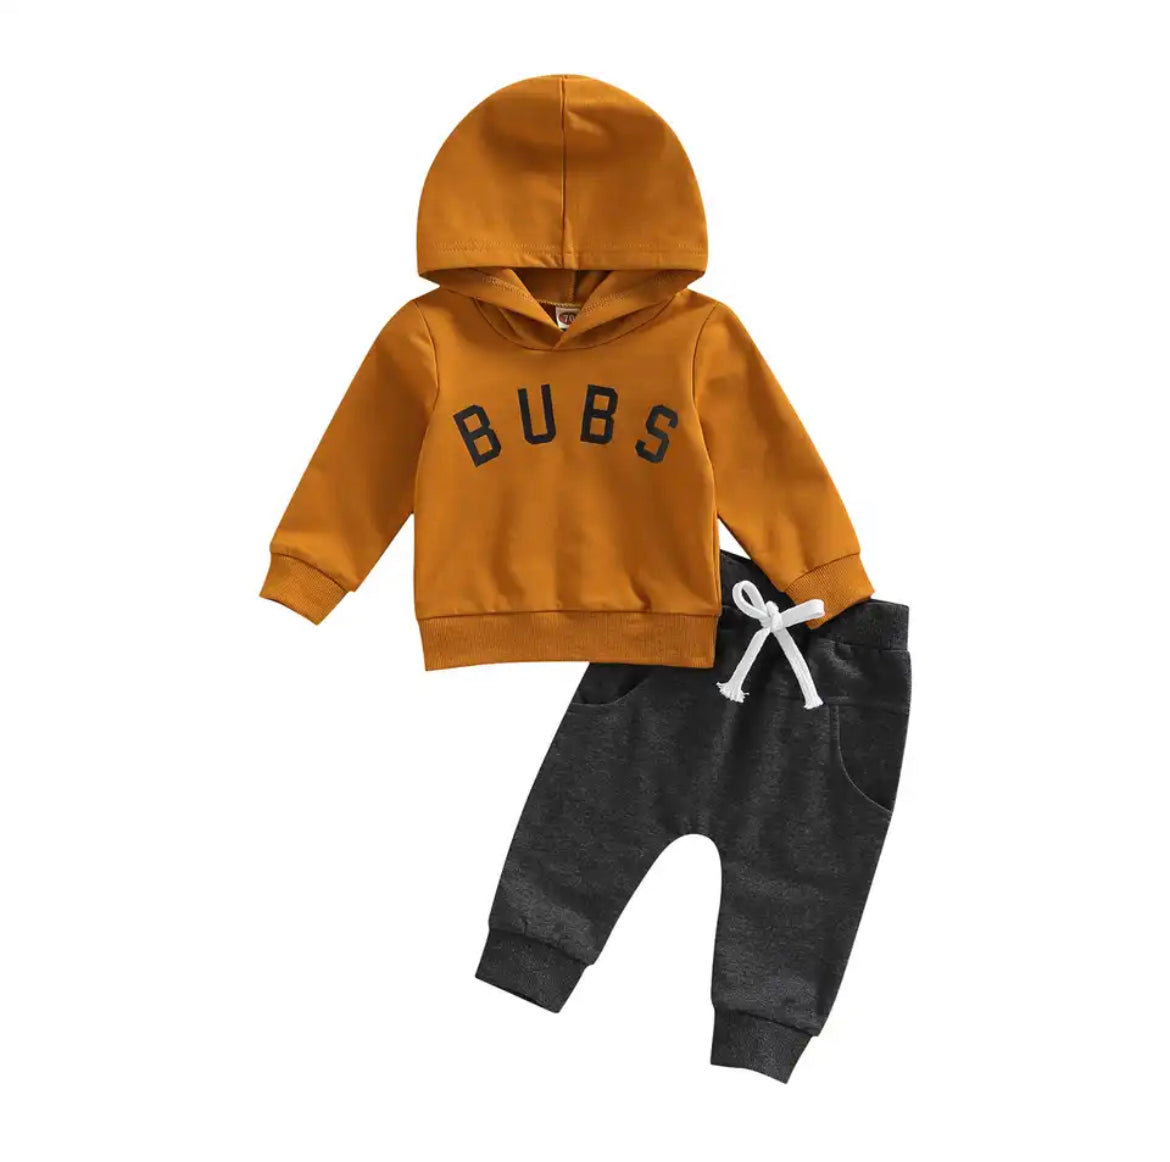 Bubs Hoodie Set - 2 Colors